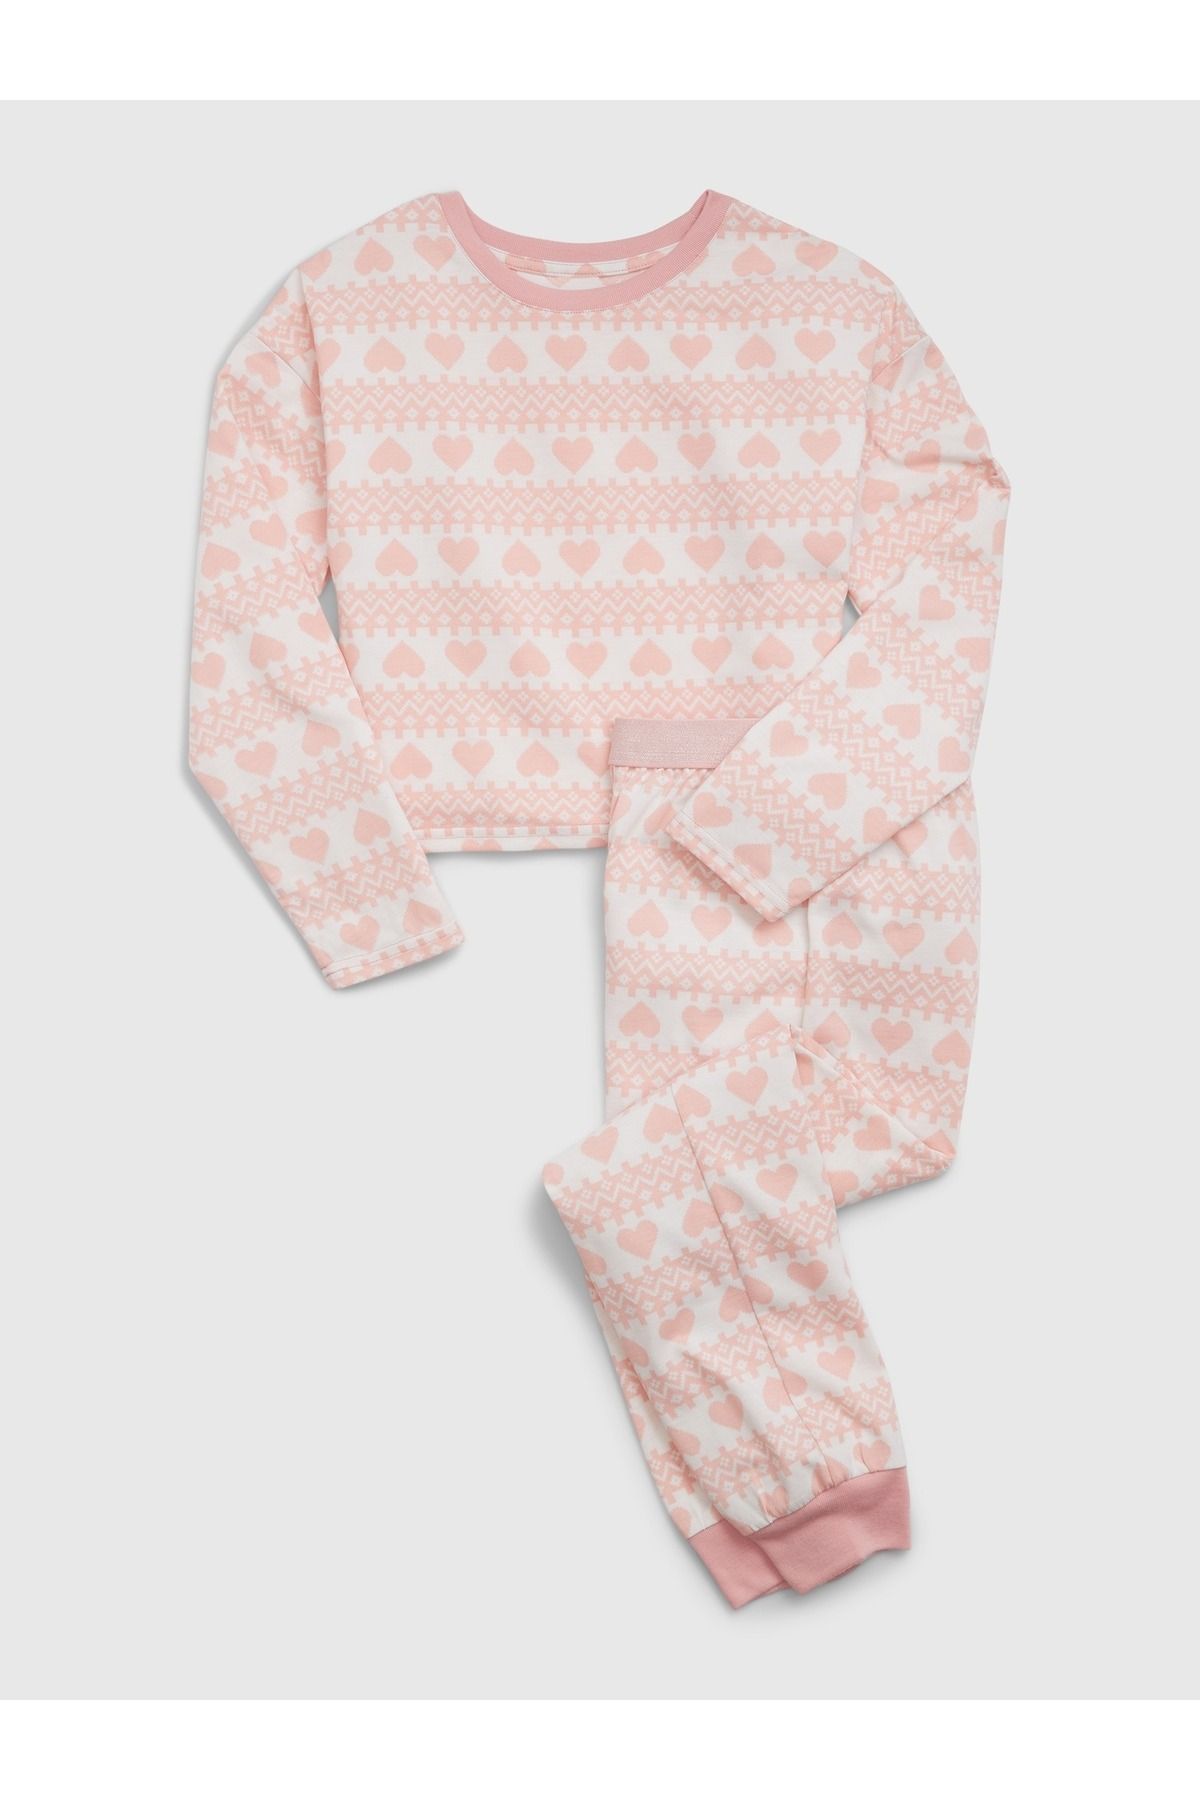 GAP Kız Çocuk Pembe Geri Dönüştürülmüş Desenli Pijama Takımı